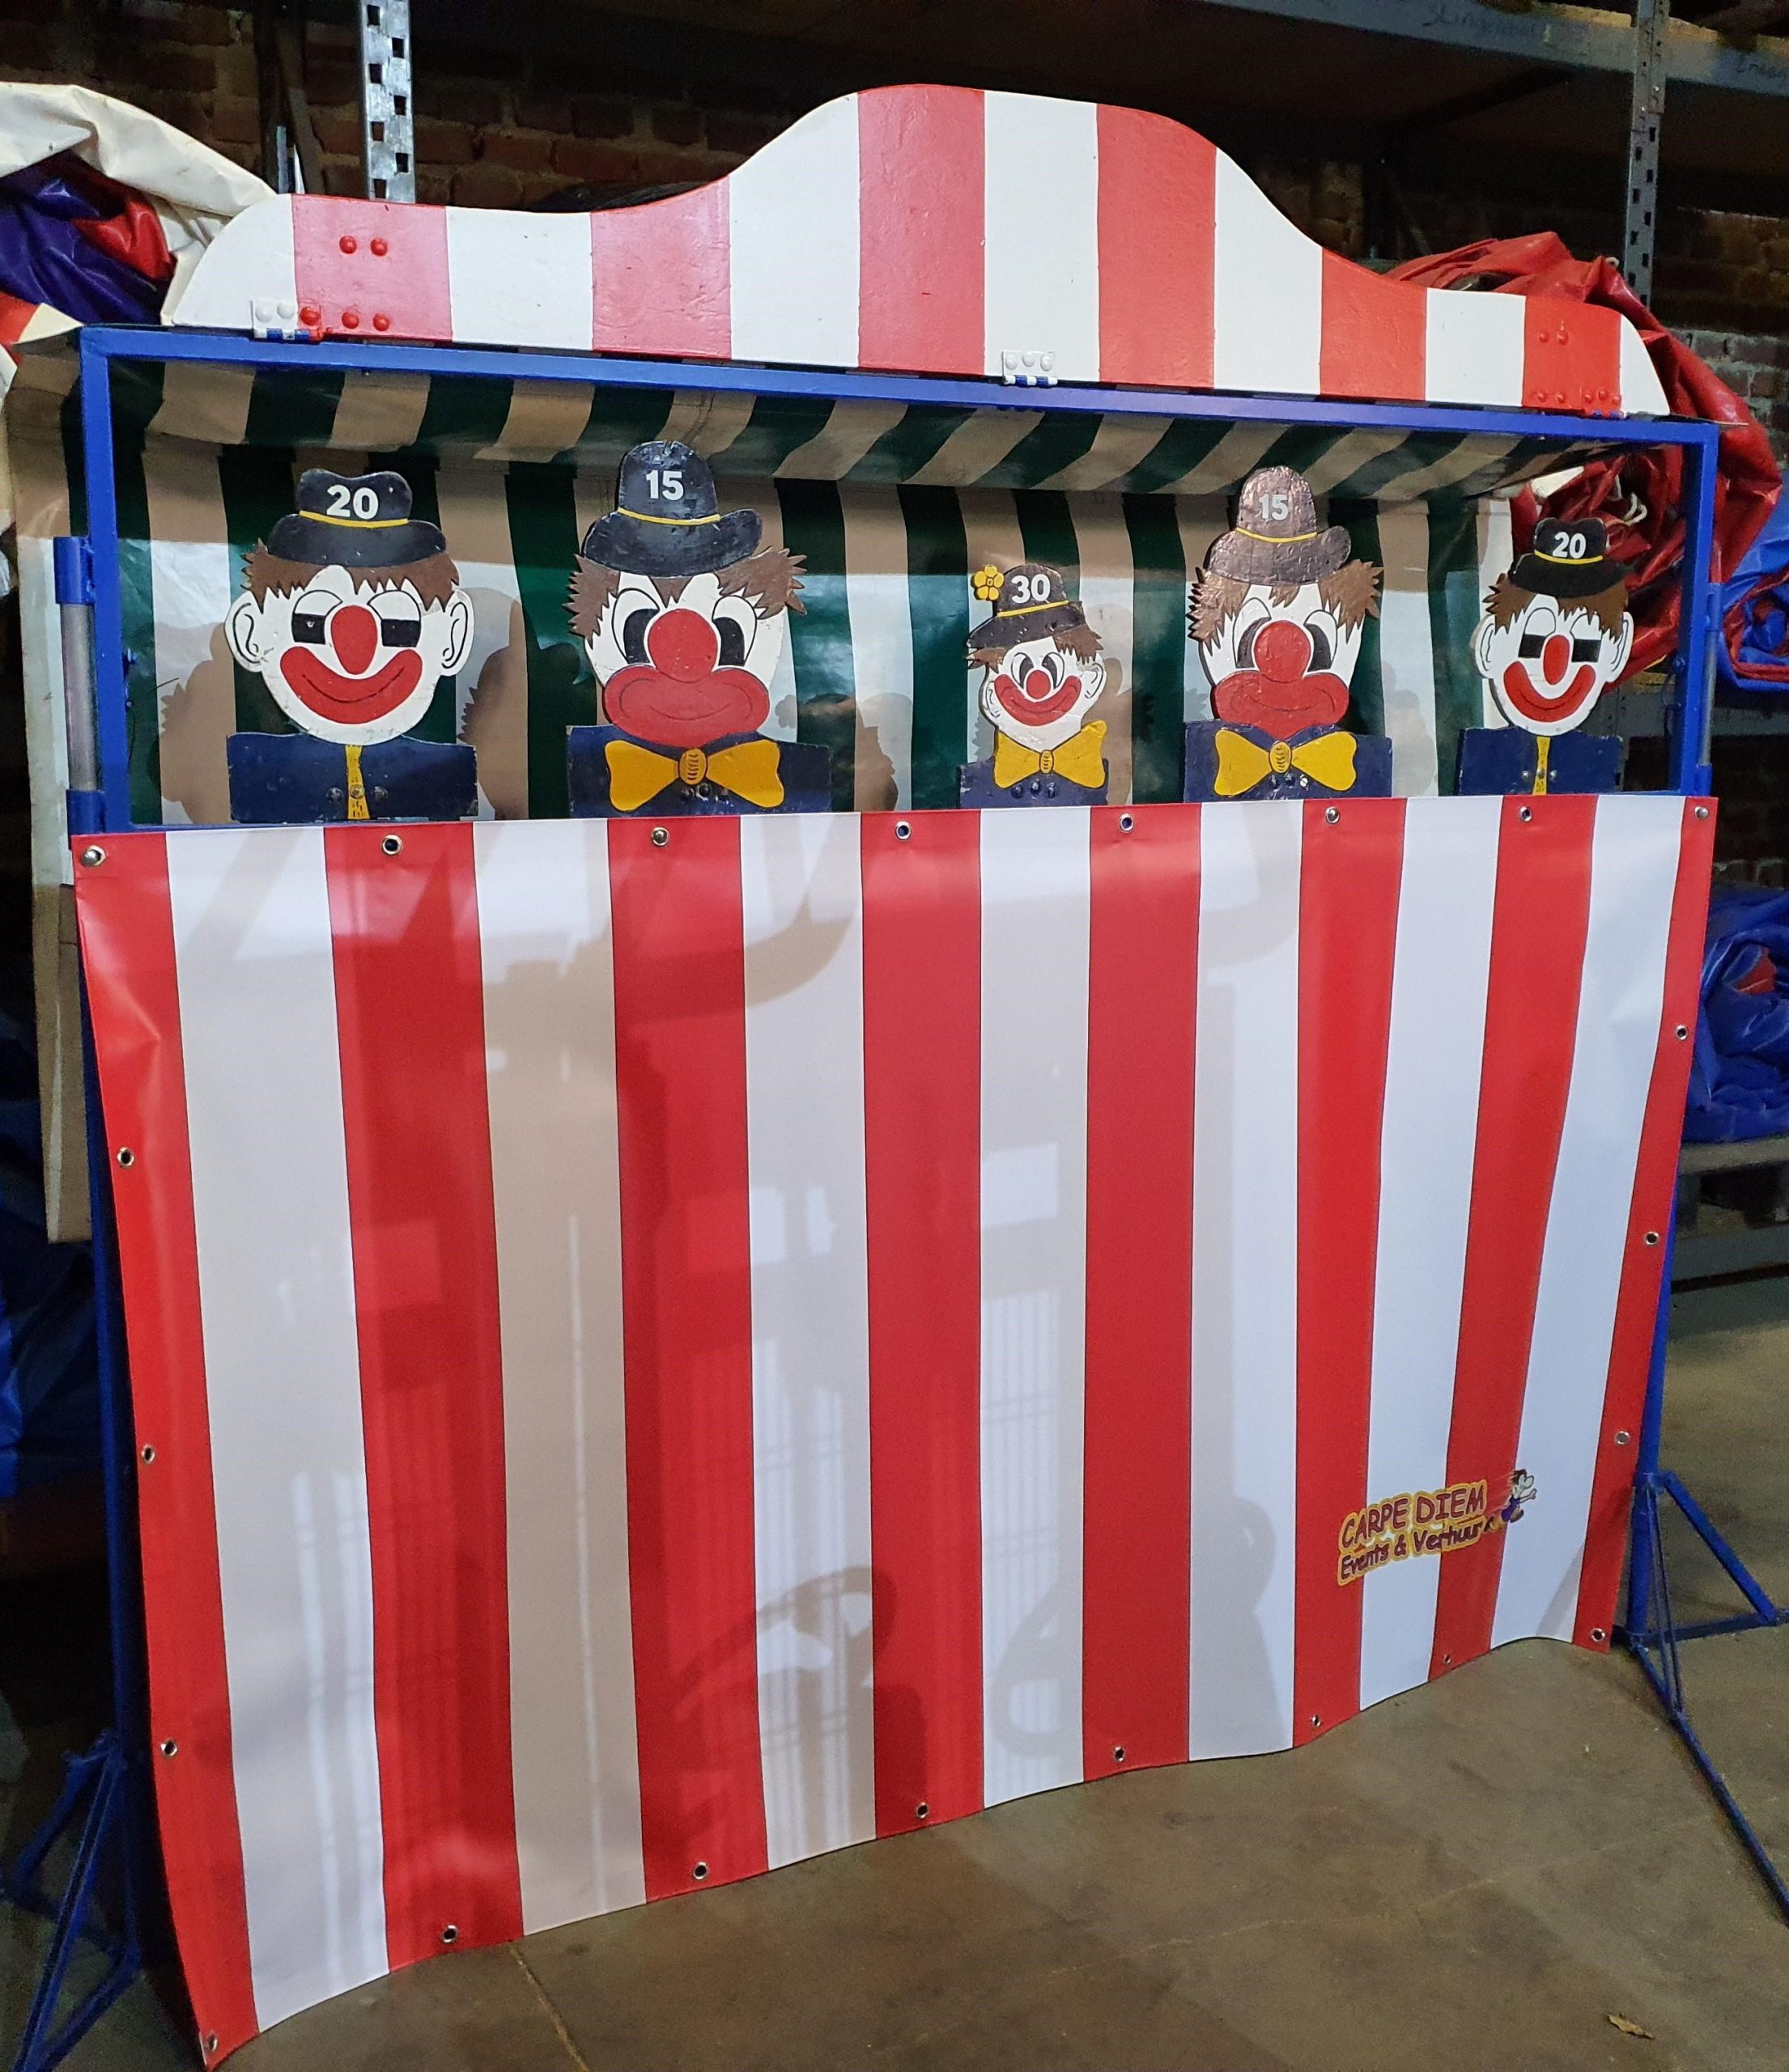 Clown koppen gooien is te huur bij Carpe Diem Events & Verhuur uit Sittard, Limburg.